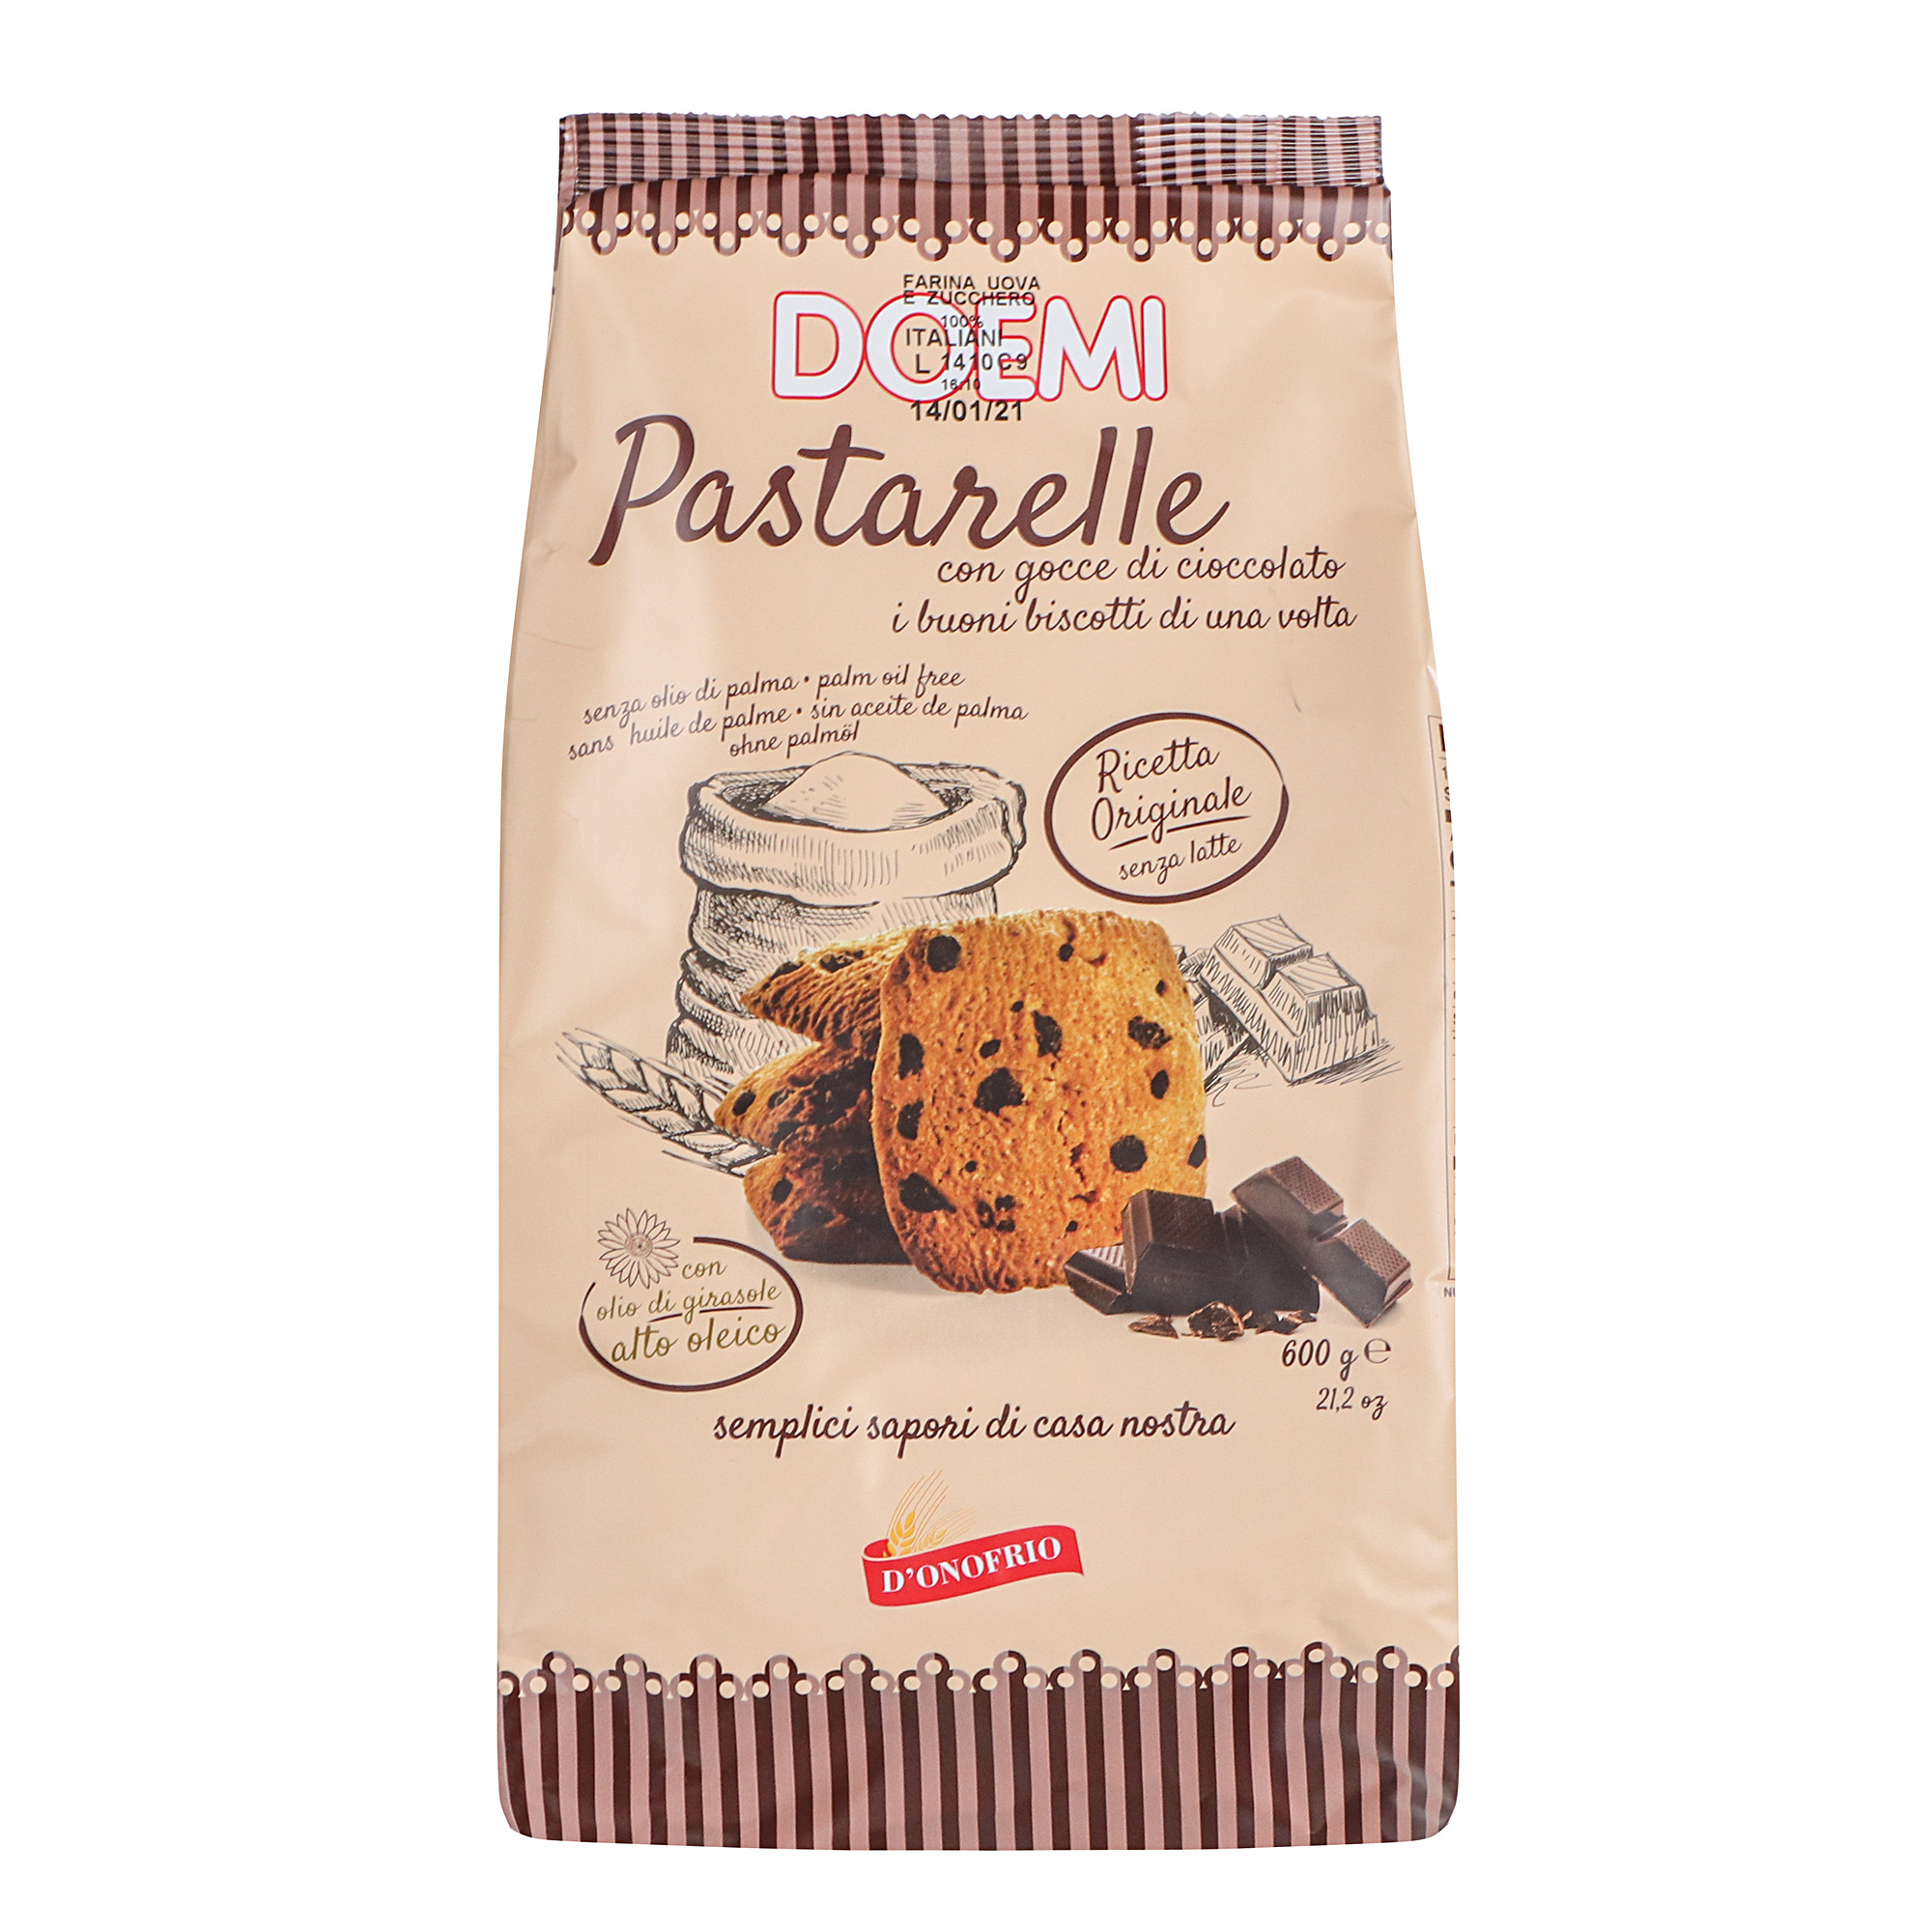 Печенье DOEMI Pastarelle с шоколадной крошкой 600 г печенье песочное doemi granpa emilios 650 г